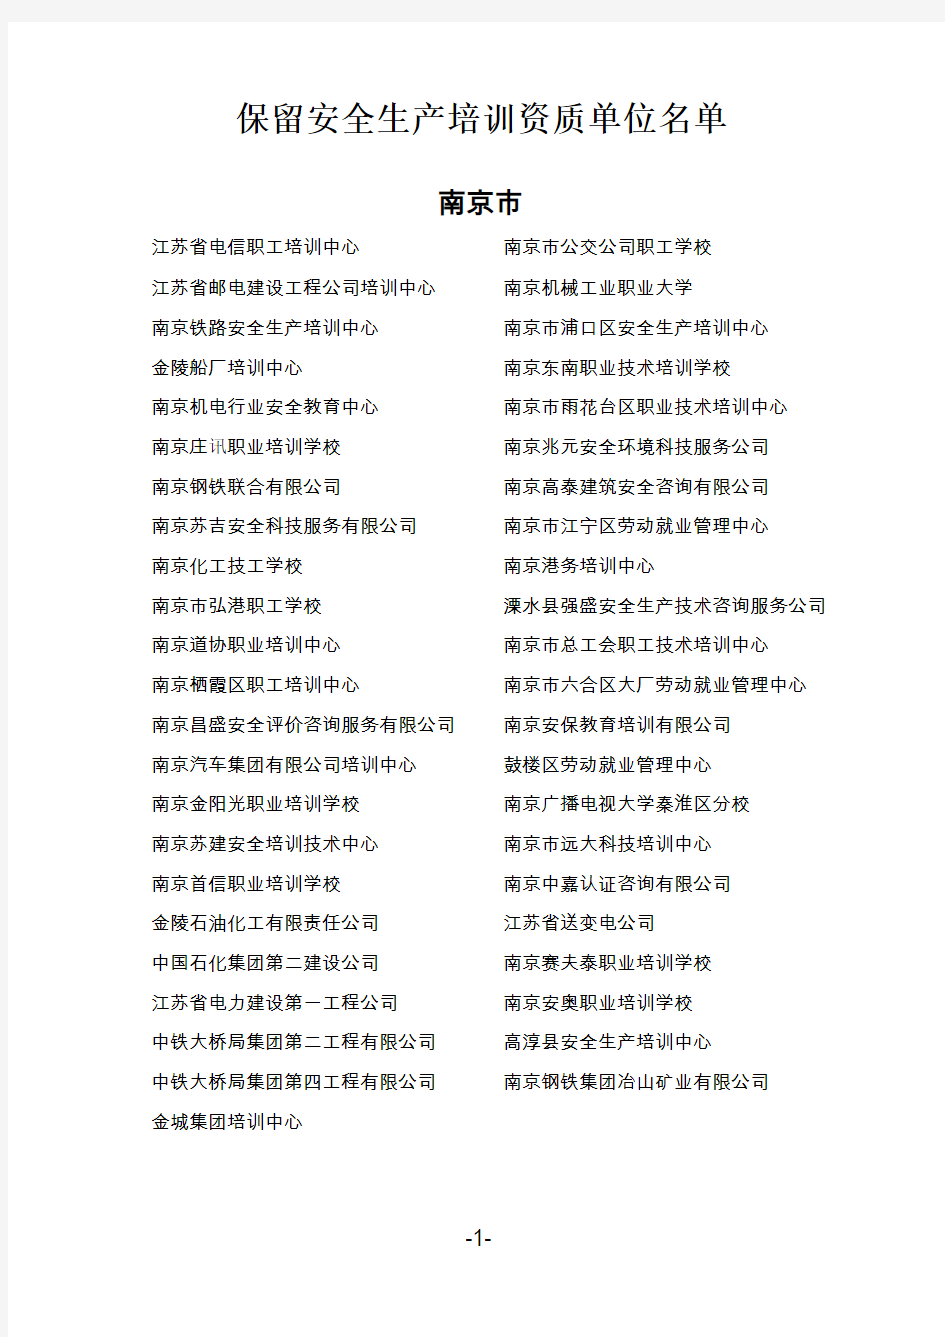 江苏省安监局培训机构名单